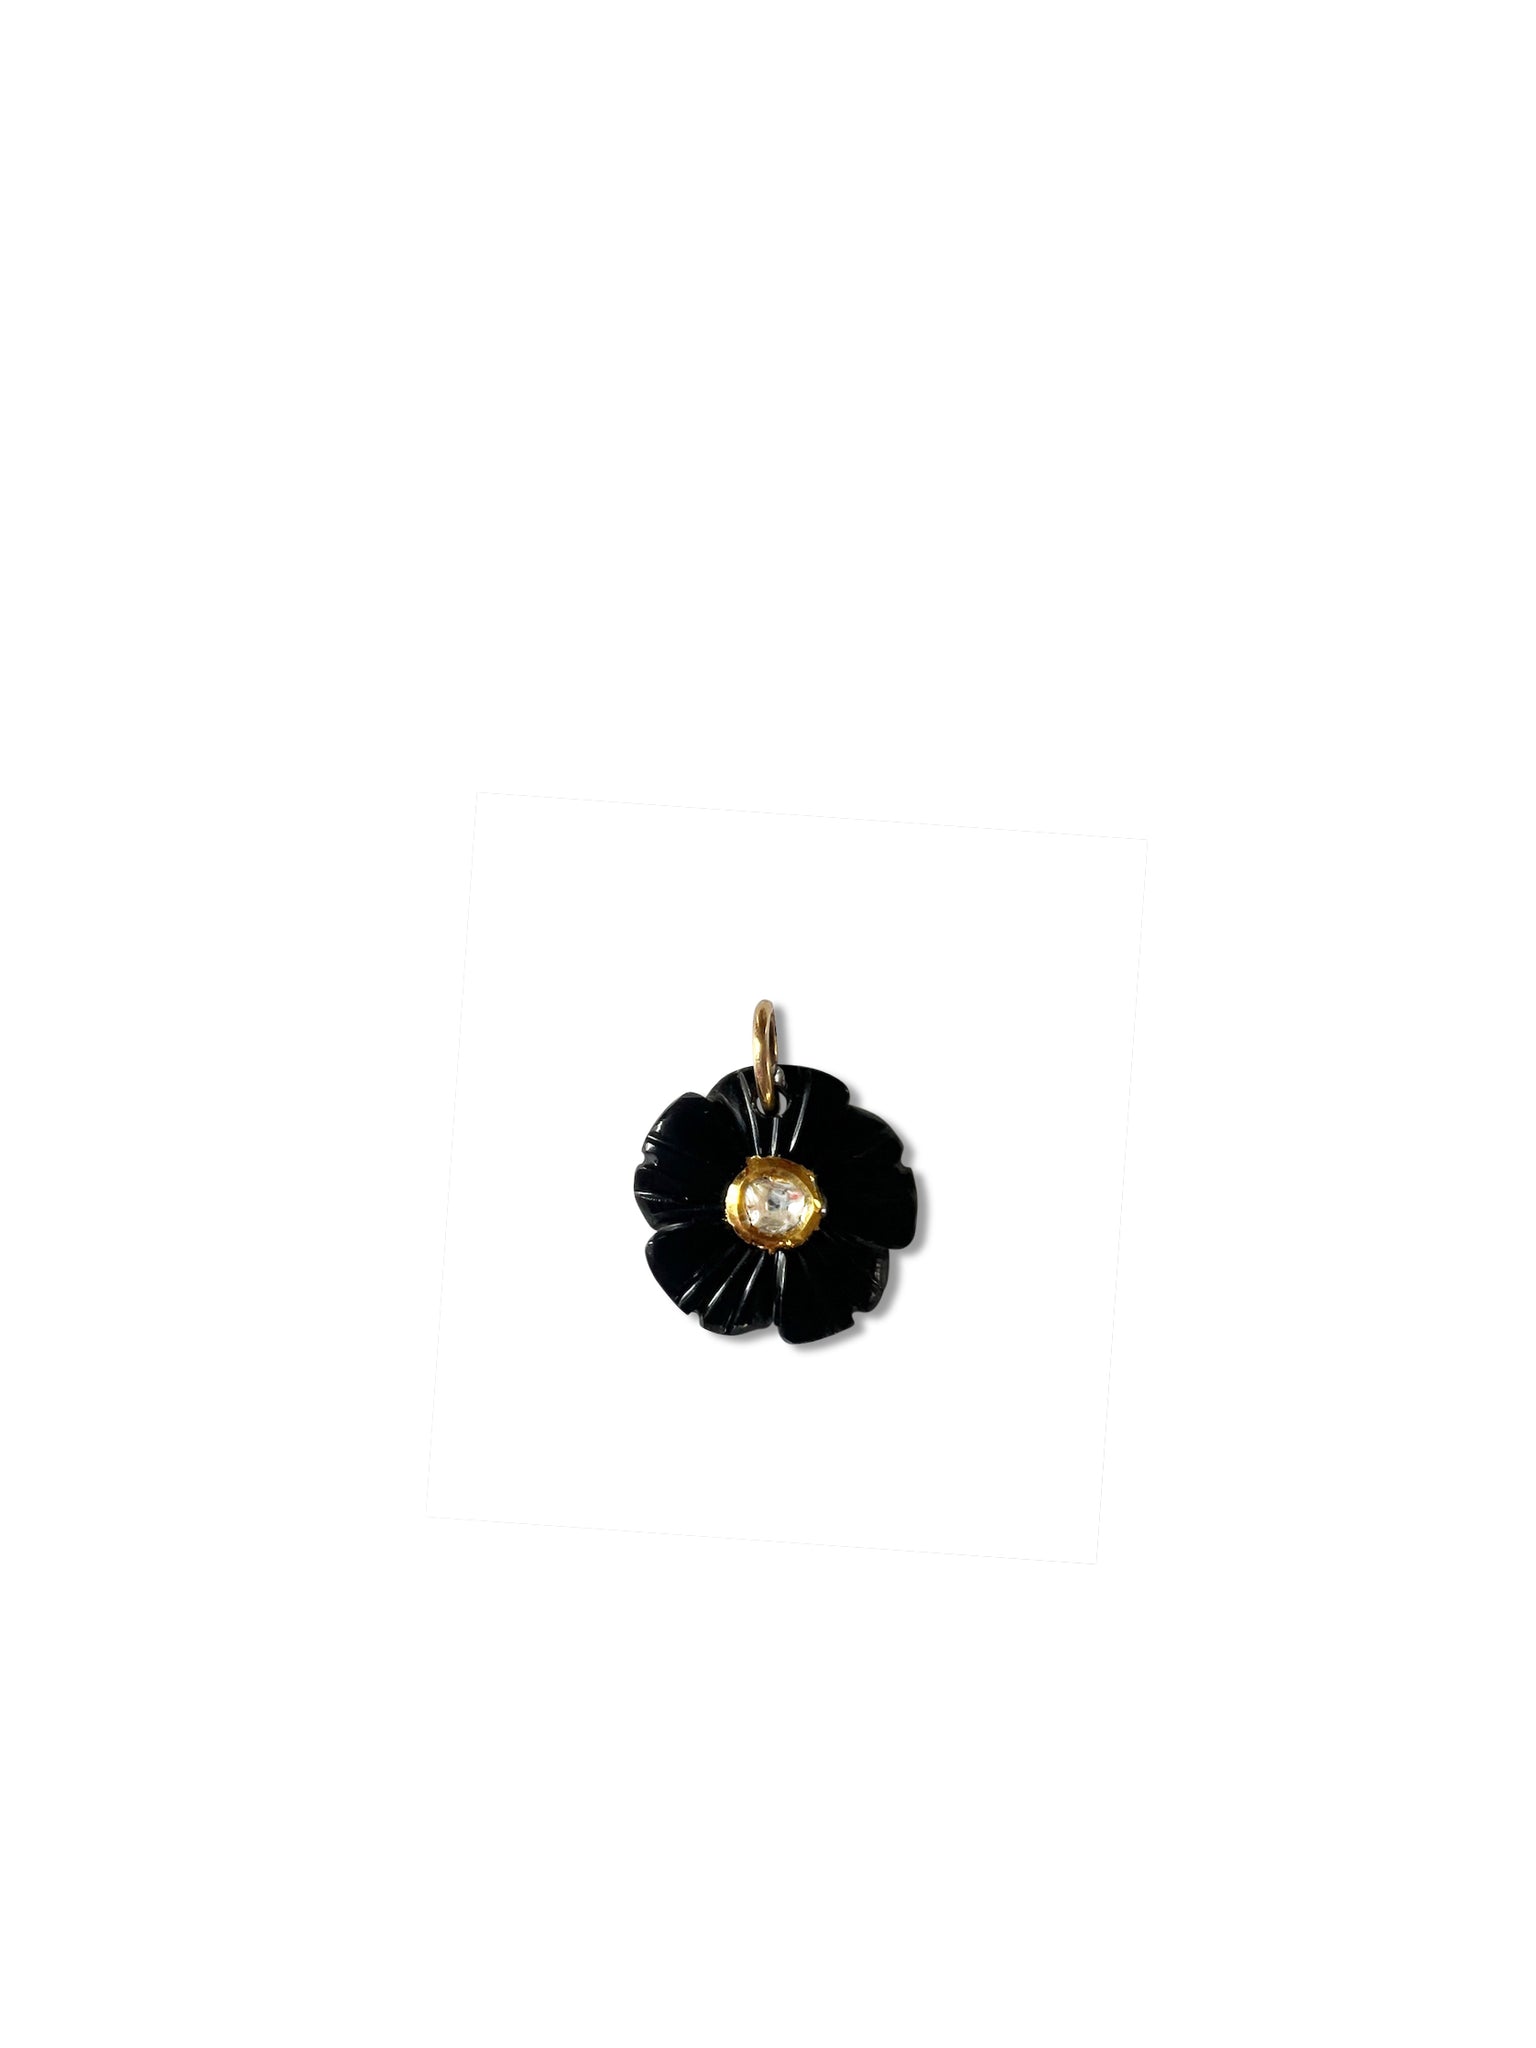 Smoky Topaz Flower Charm with Diamond set in Gold